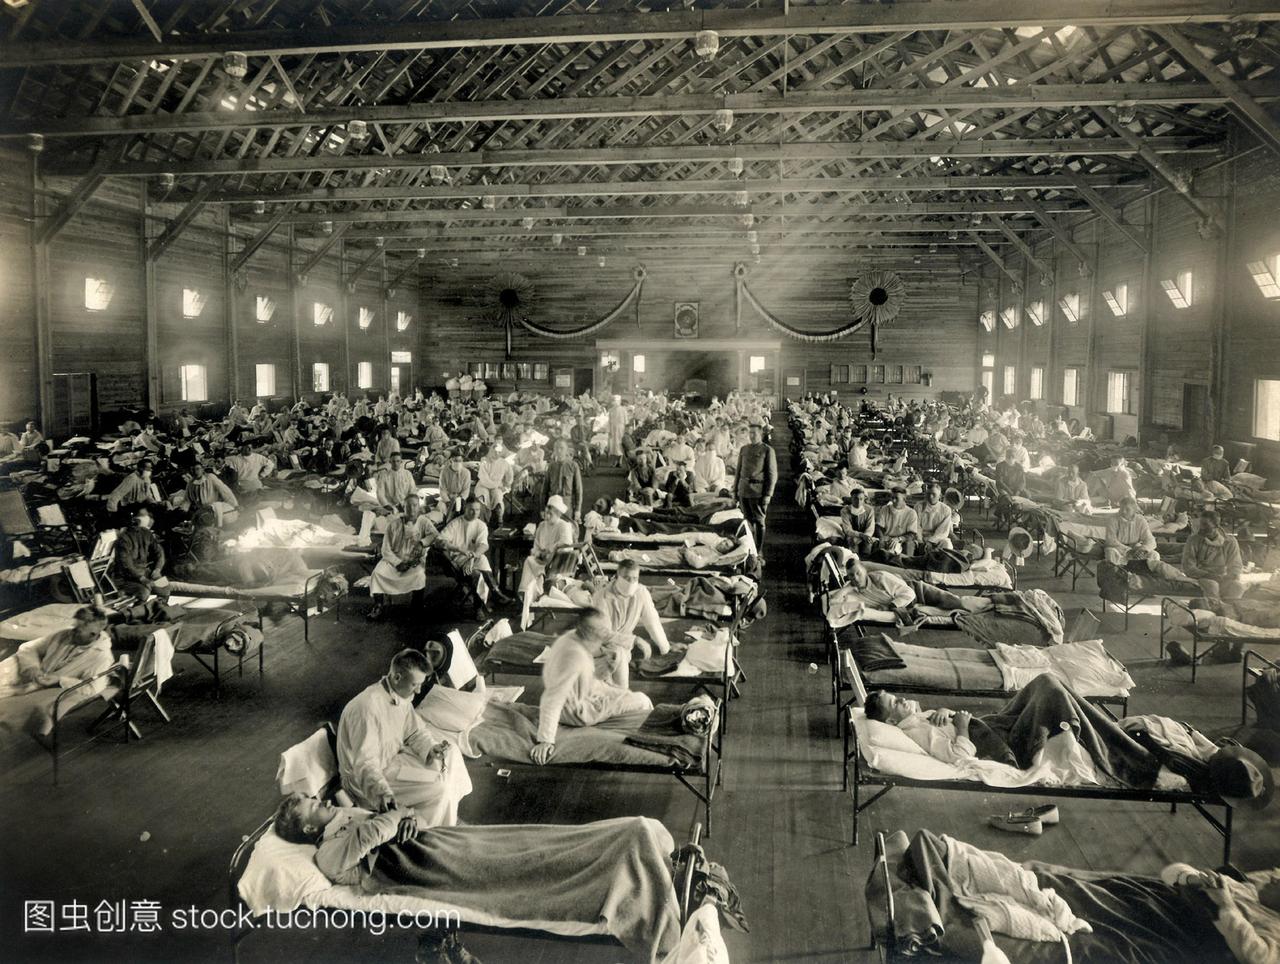 流感病房。在1918年西班牙流感大流行期间,急